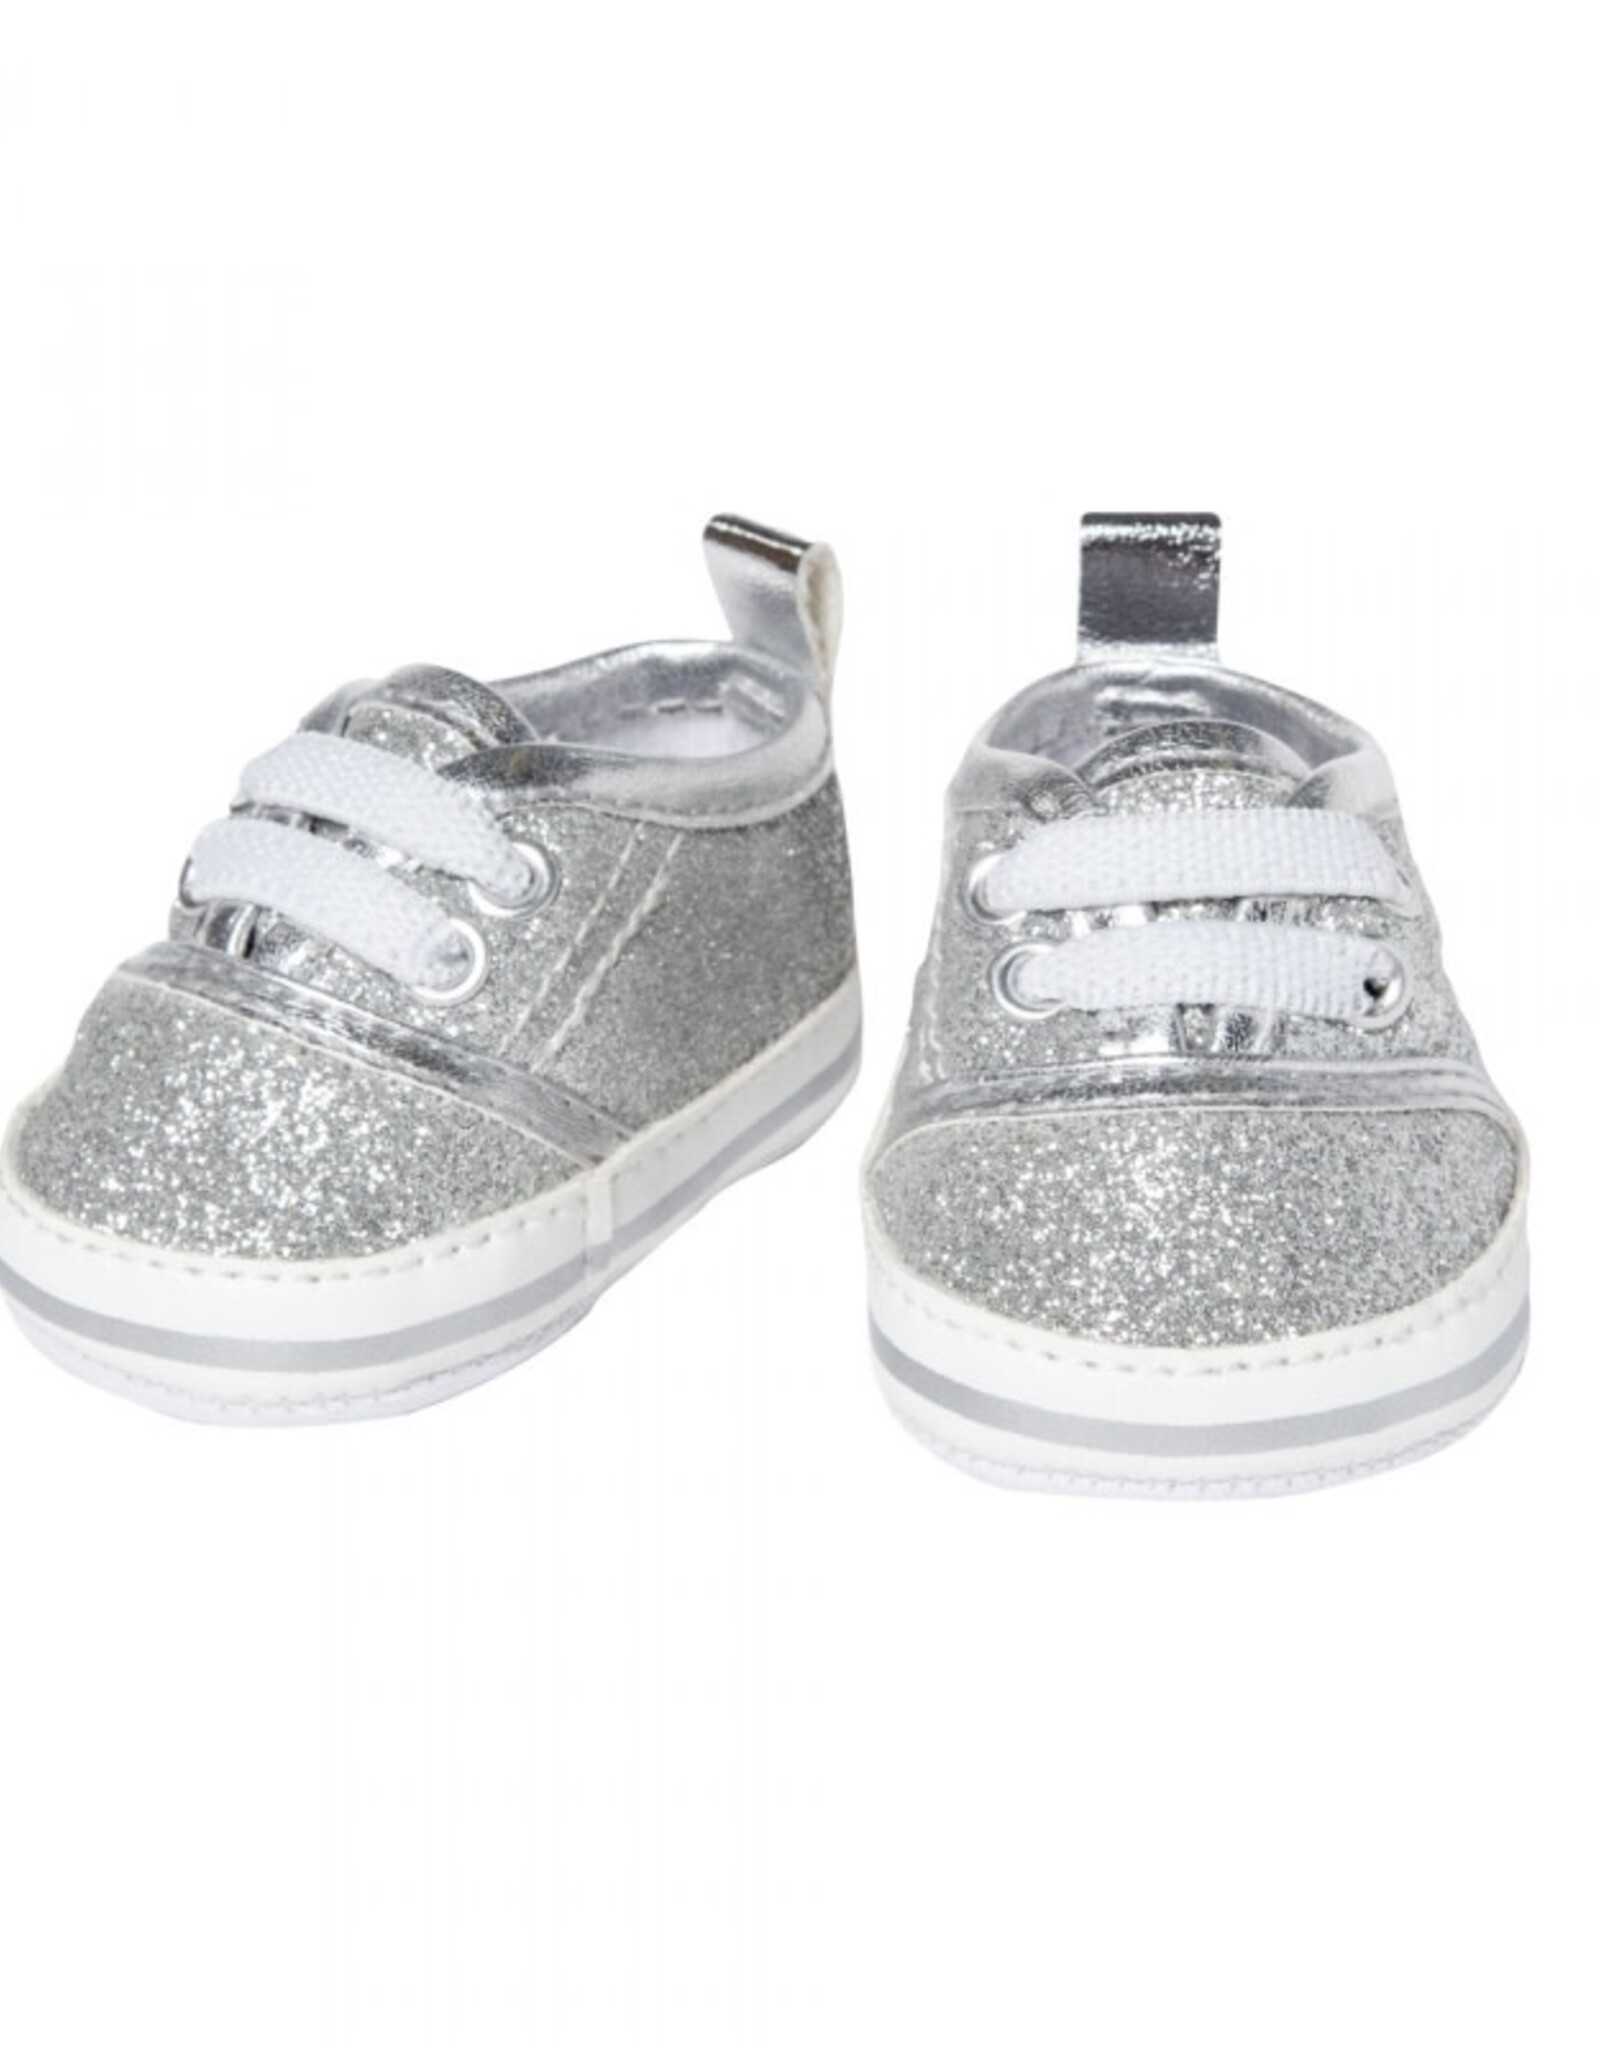 Heless Sneakers zilver glitter